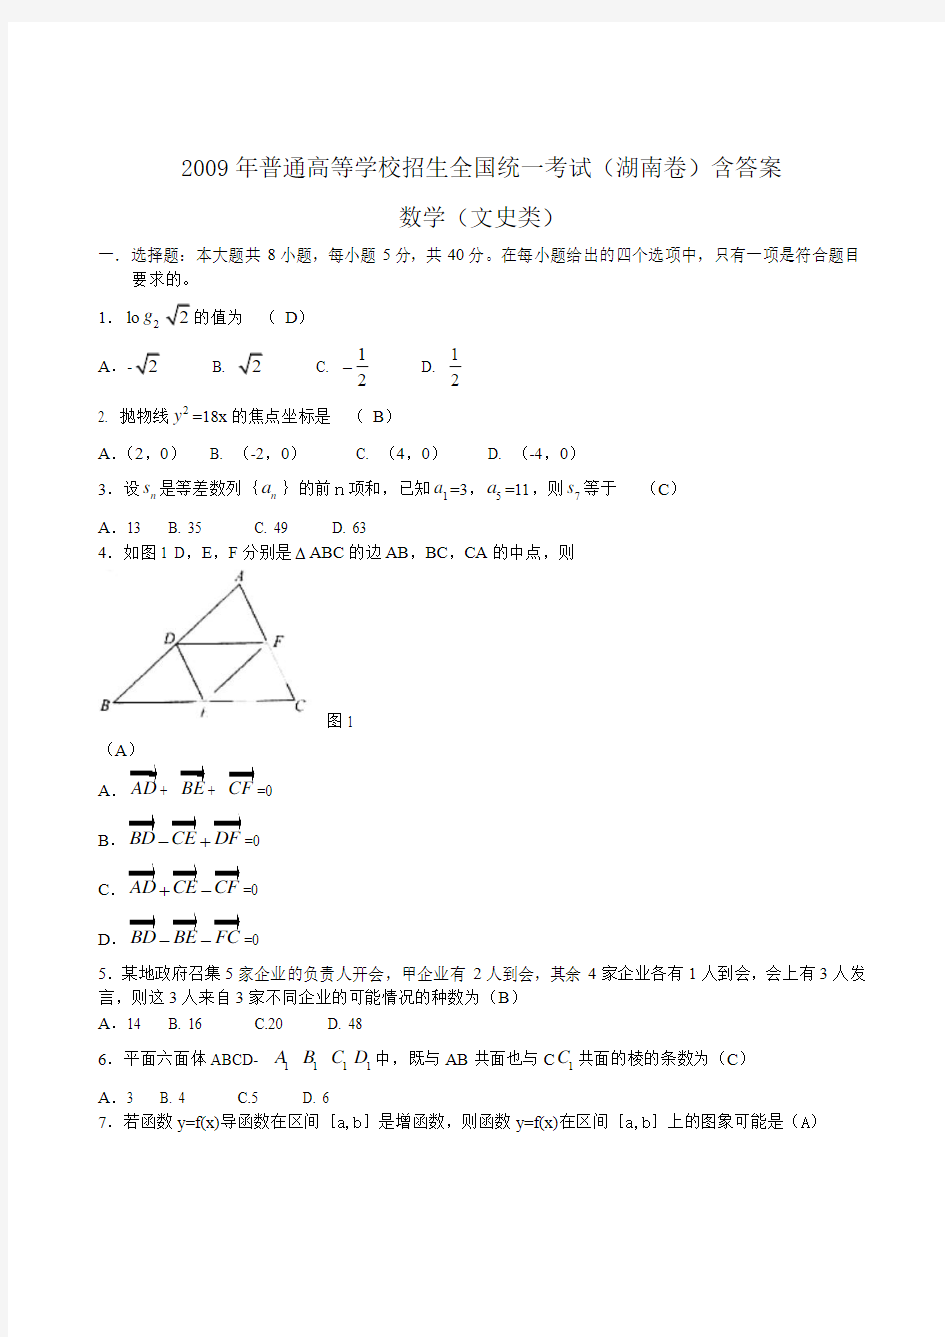 2009年高考文科数学试题(湖南卷)含答案